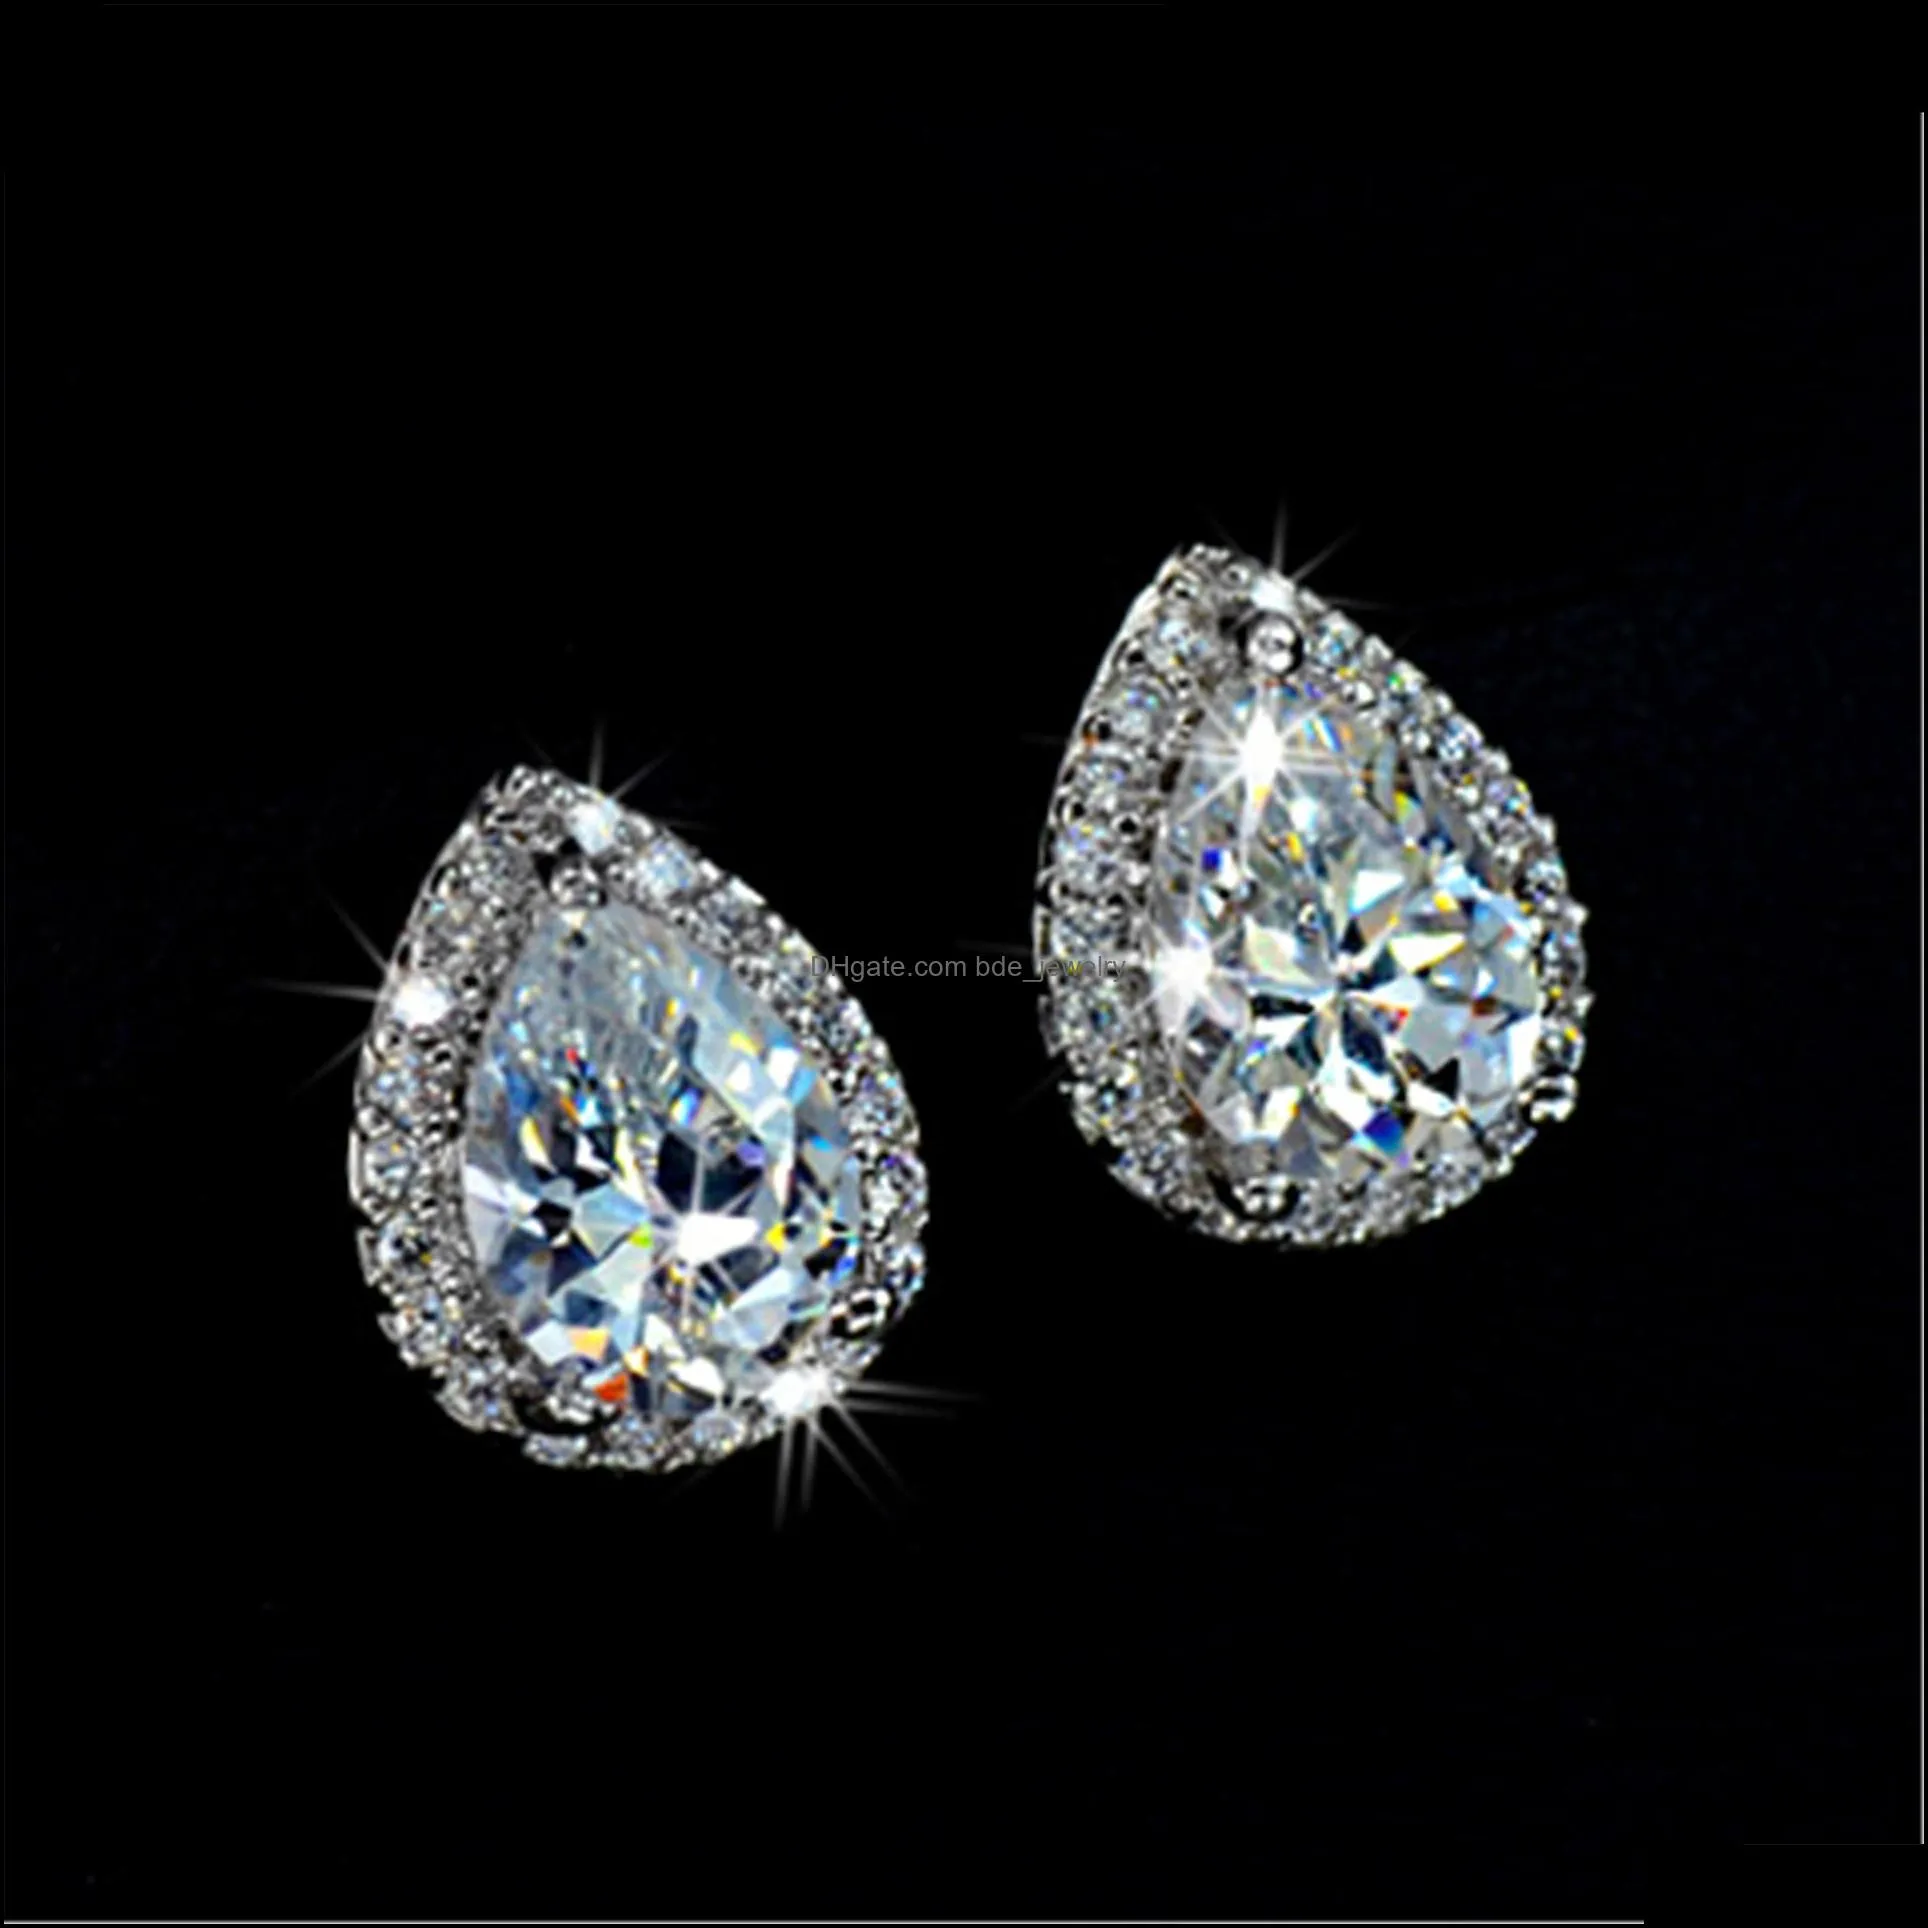 water drop drill stud earrings womens crystal earrings silver party creative fashion stud earrings